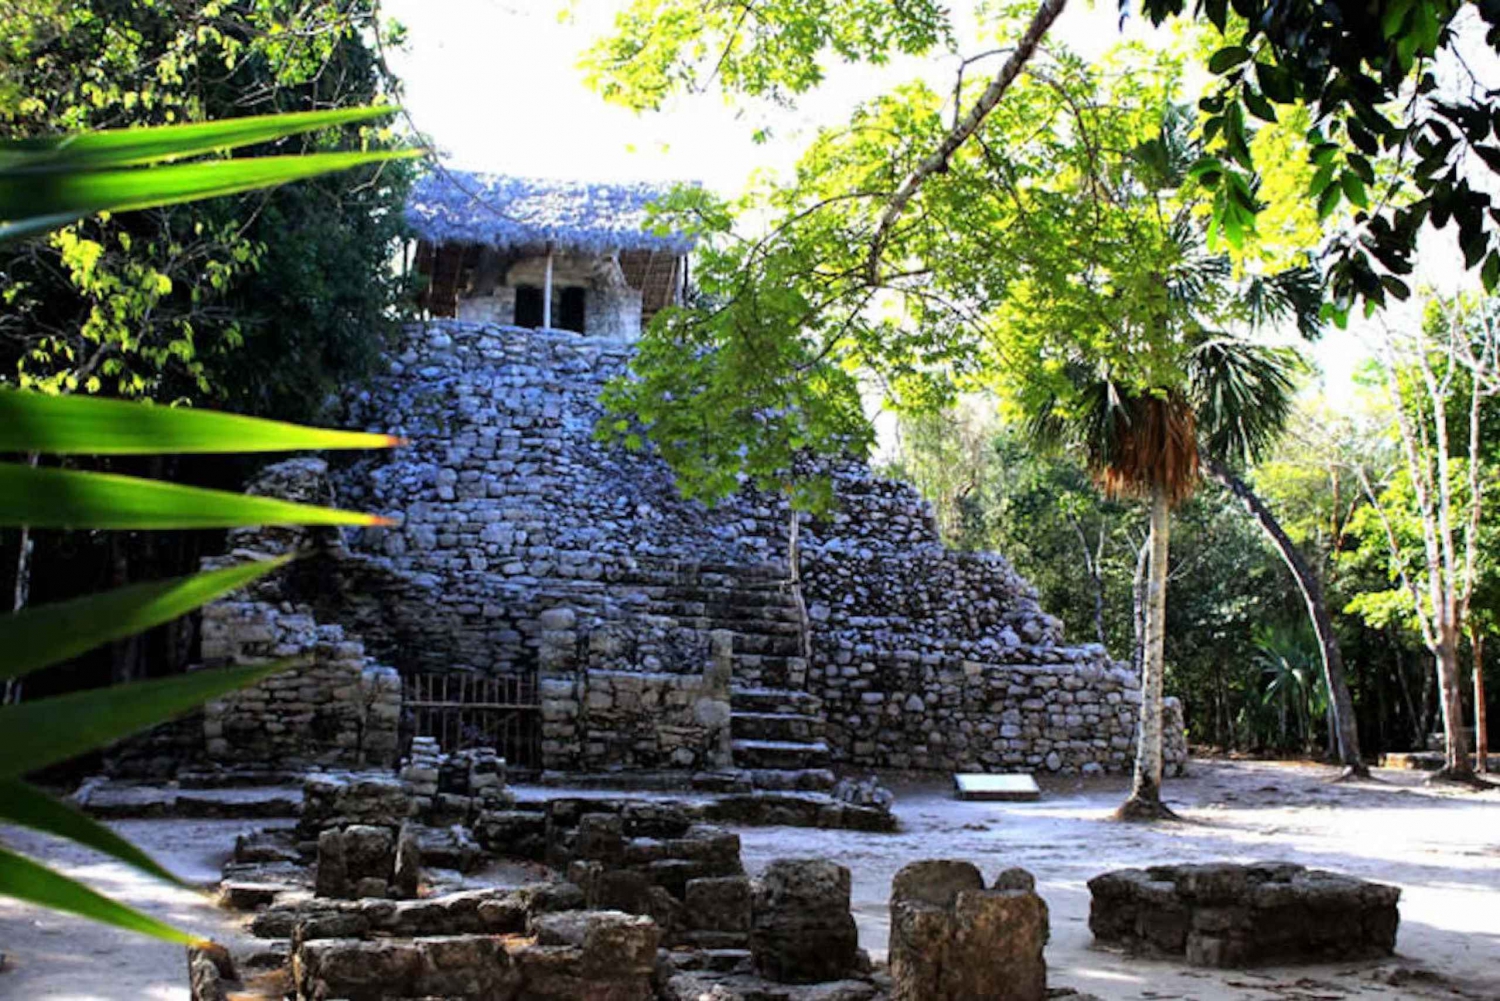 Coba & Tulum Mayan Ruins Discovery Combo Tour